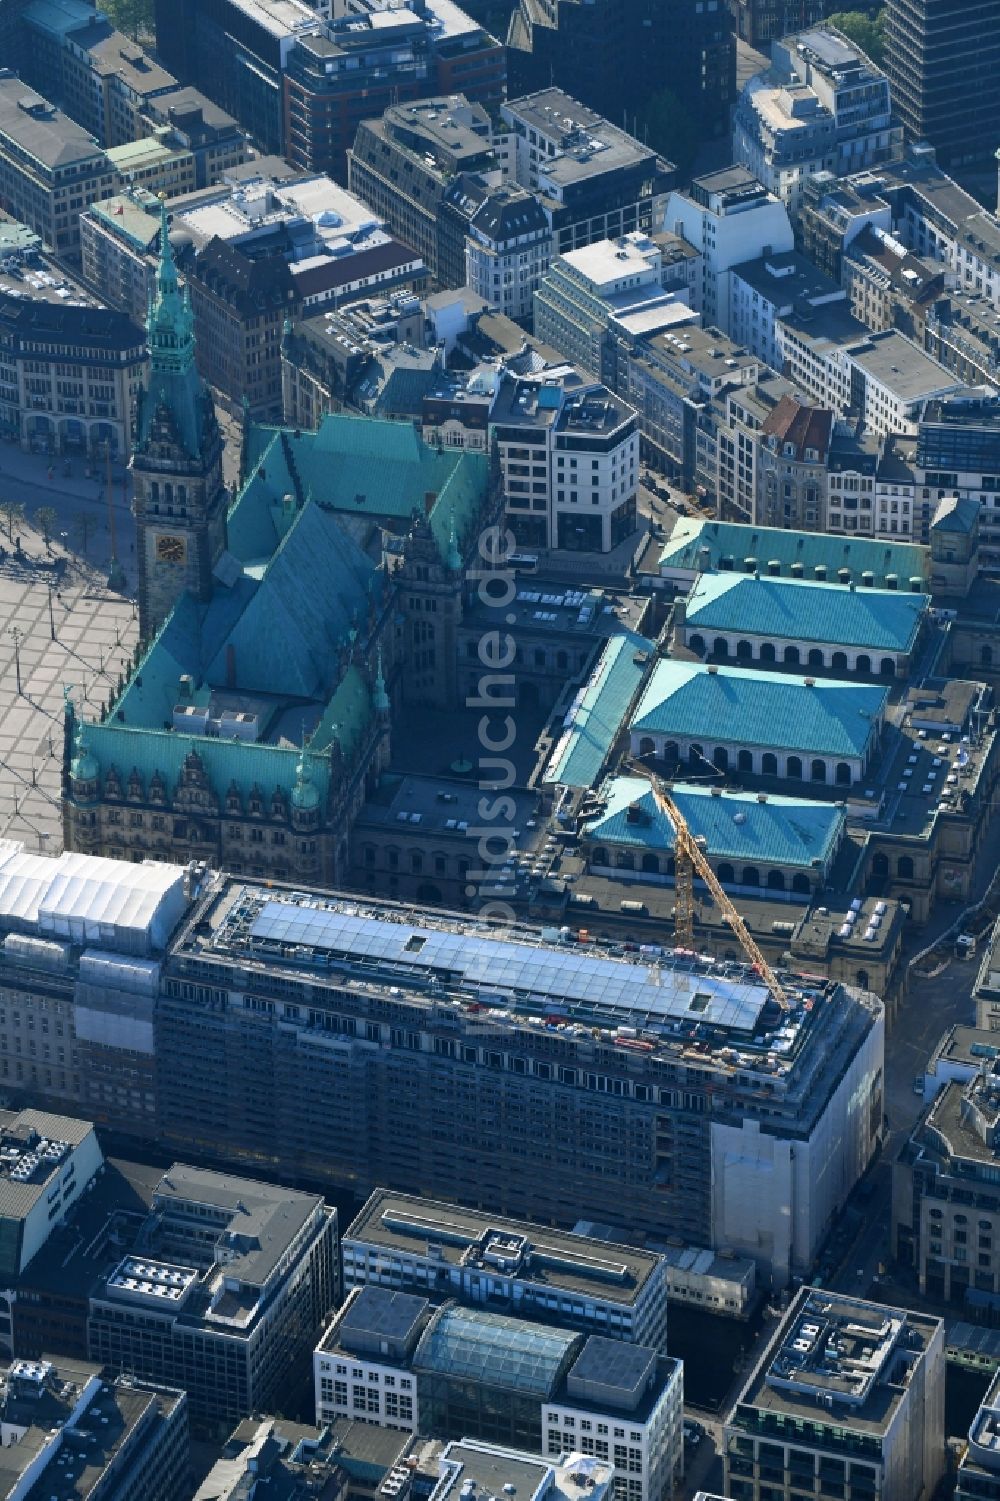 Luftaufnahme Hamburg - Baustelle zum Neubau eines Büro- und Geschäftshauses am Einkaufsboulevard Alter Wall in Hamburg, Deutschland